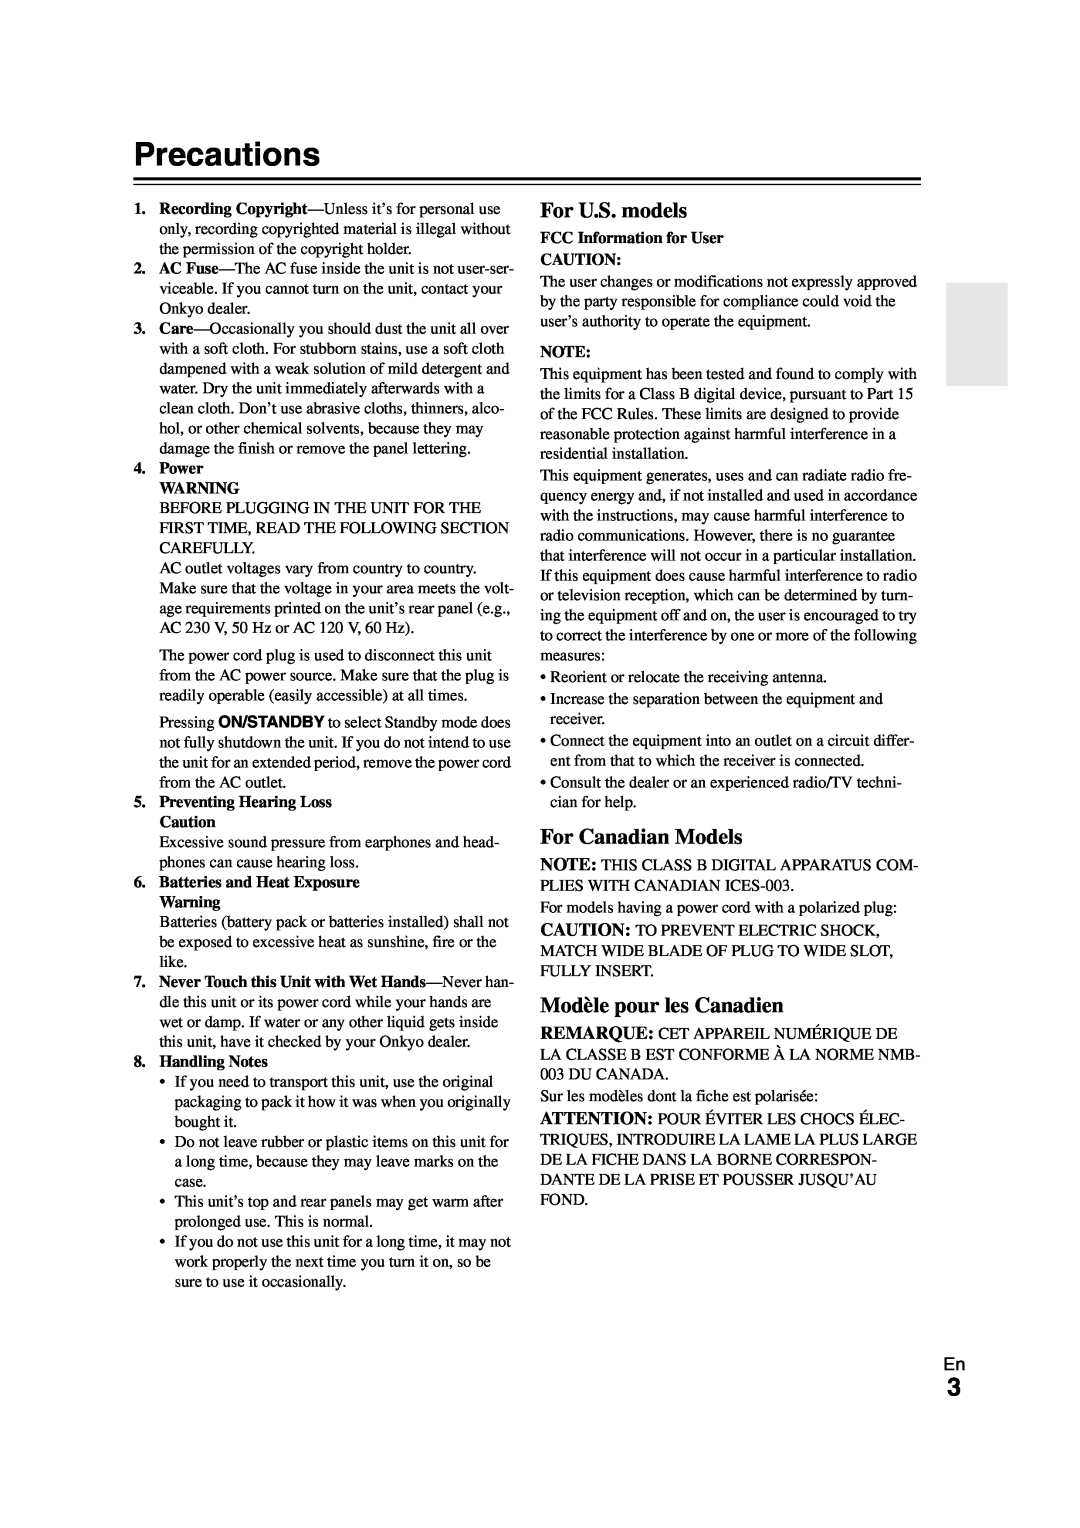 Onkyo HT-S3300 instruction manual Precautions, For U.S. models, For Canadian Models, Modèle pour les Canadien 